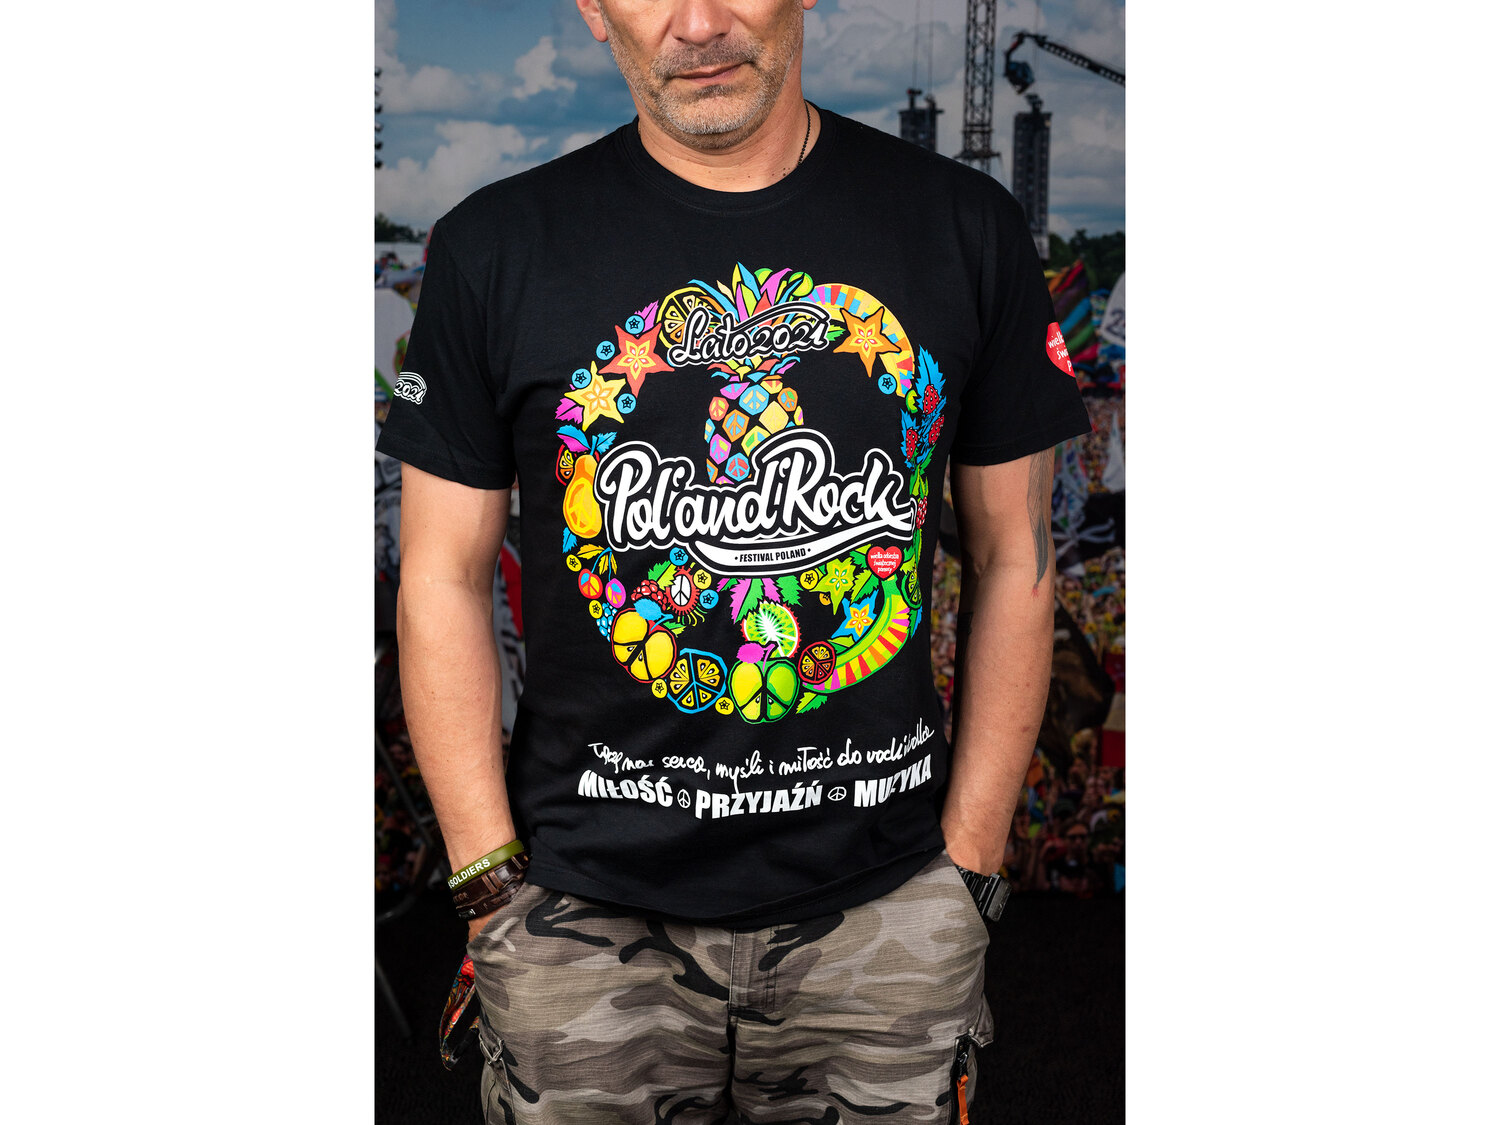 Pol’and’Rock T-shirt męski , cena 49,99 PLN 
- rozmiary: M-XL
- edycja limitowana
Dostępne ...